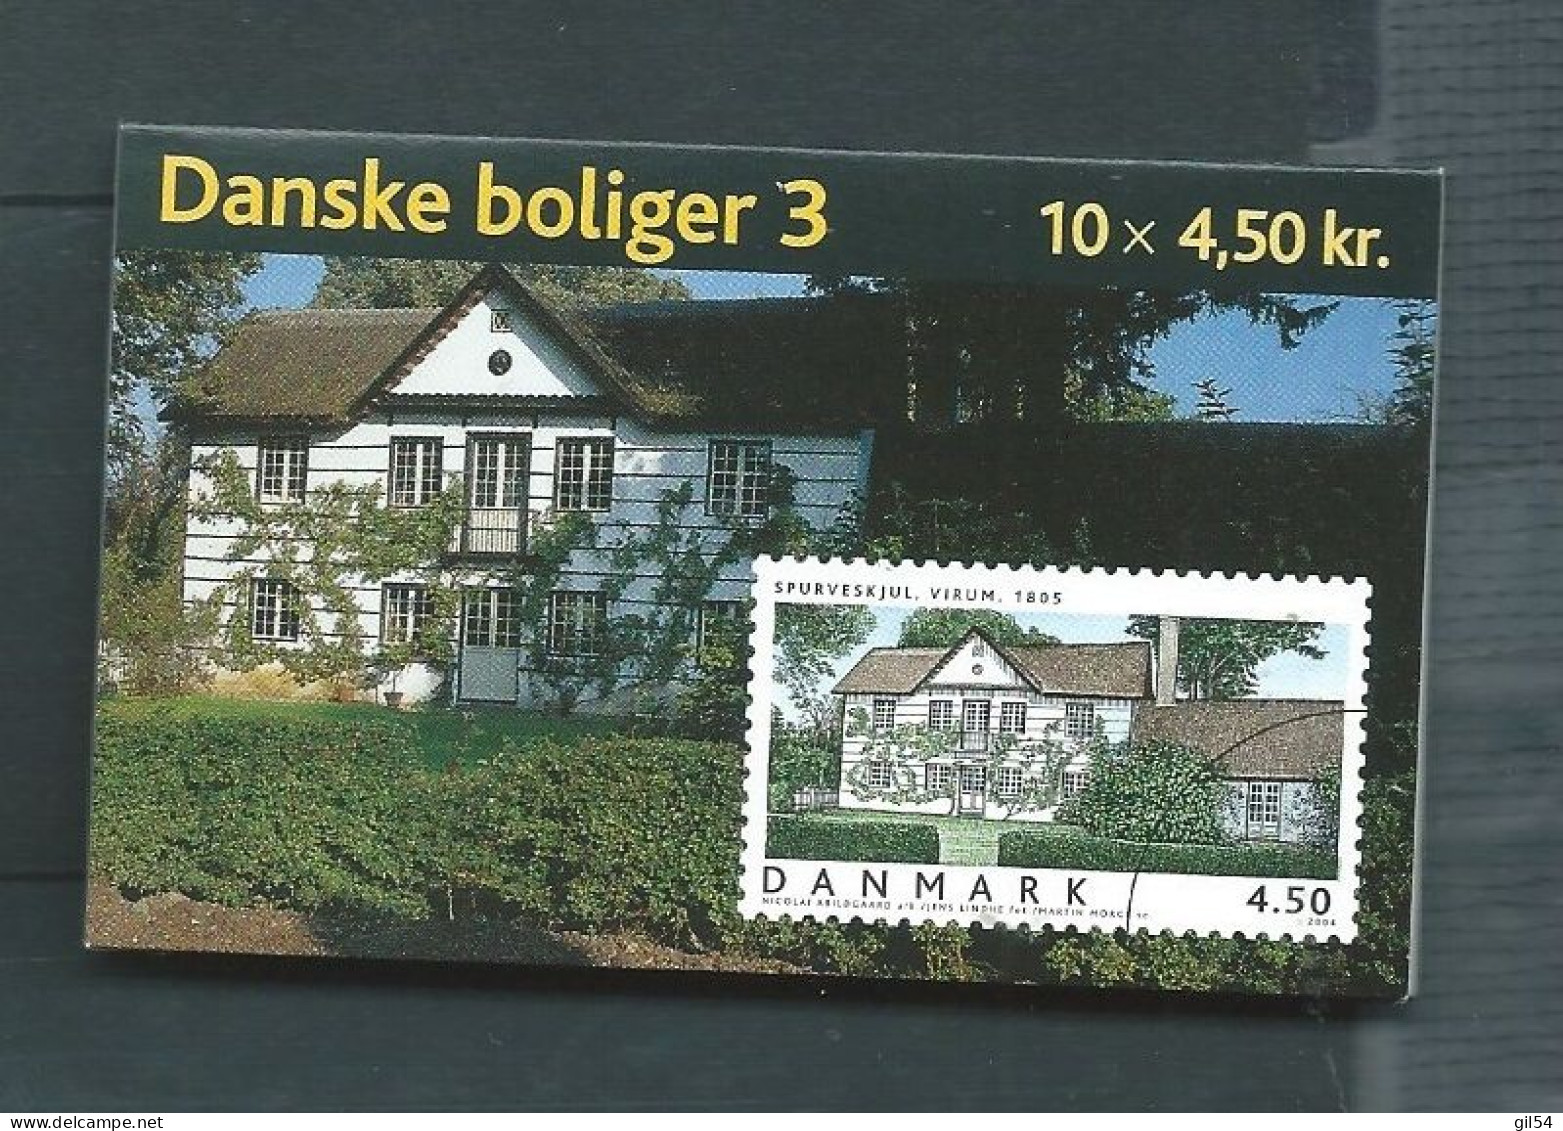 2004 MNH Danmark, Booklet S135 Postfris  Pb 20505 - Markenheftchen